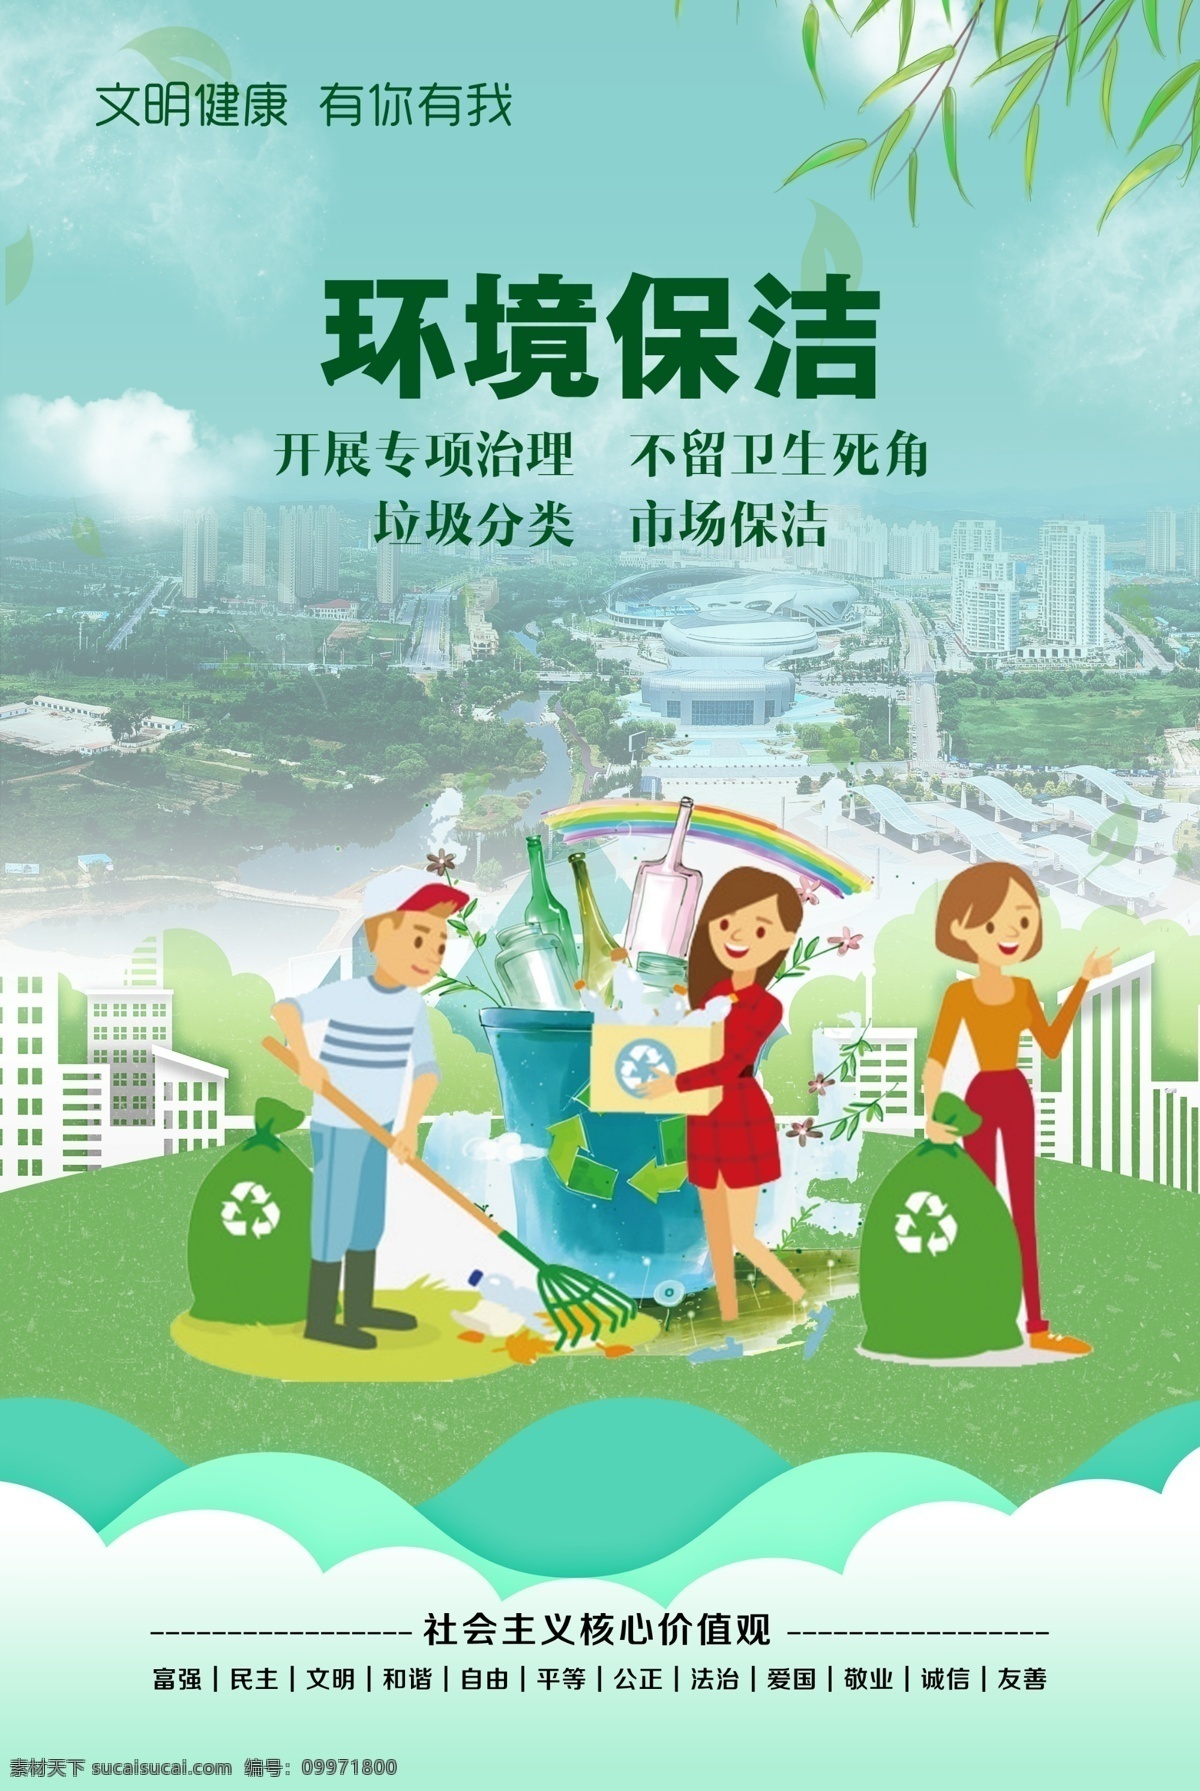 文明城市 环境保护 核心价值观 爱护环境 垃圾分类